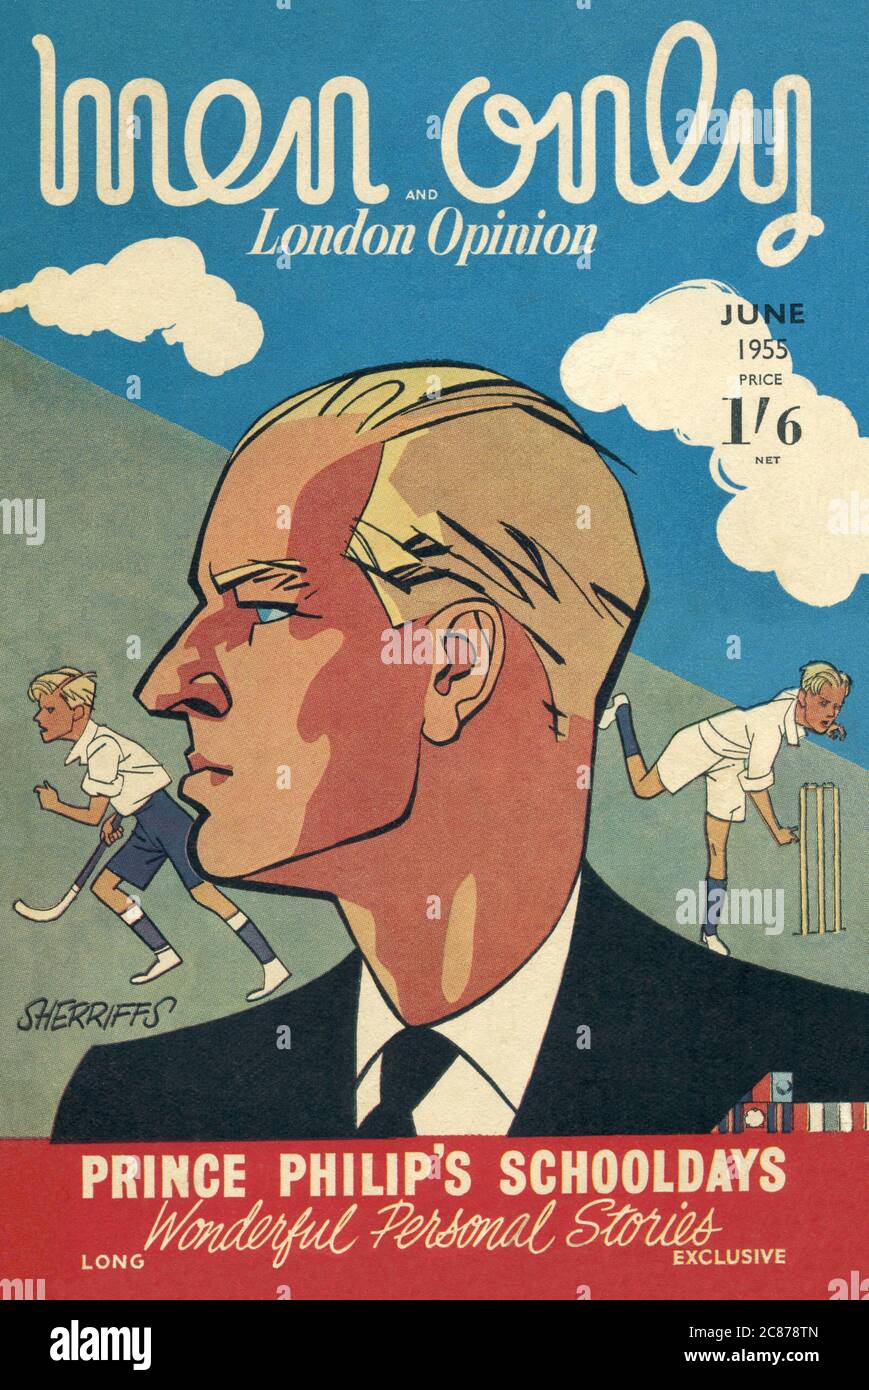 La portada de Men Only y la revista London Opinion - Junio de 1955 - Prince Philip's Schooldays, con "maravillosas historias personales". Fecha: 1955 Foto de stock